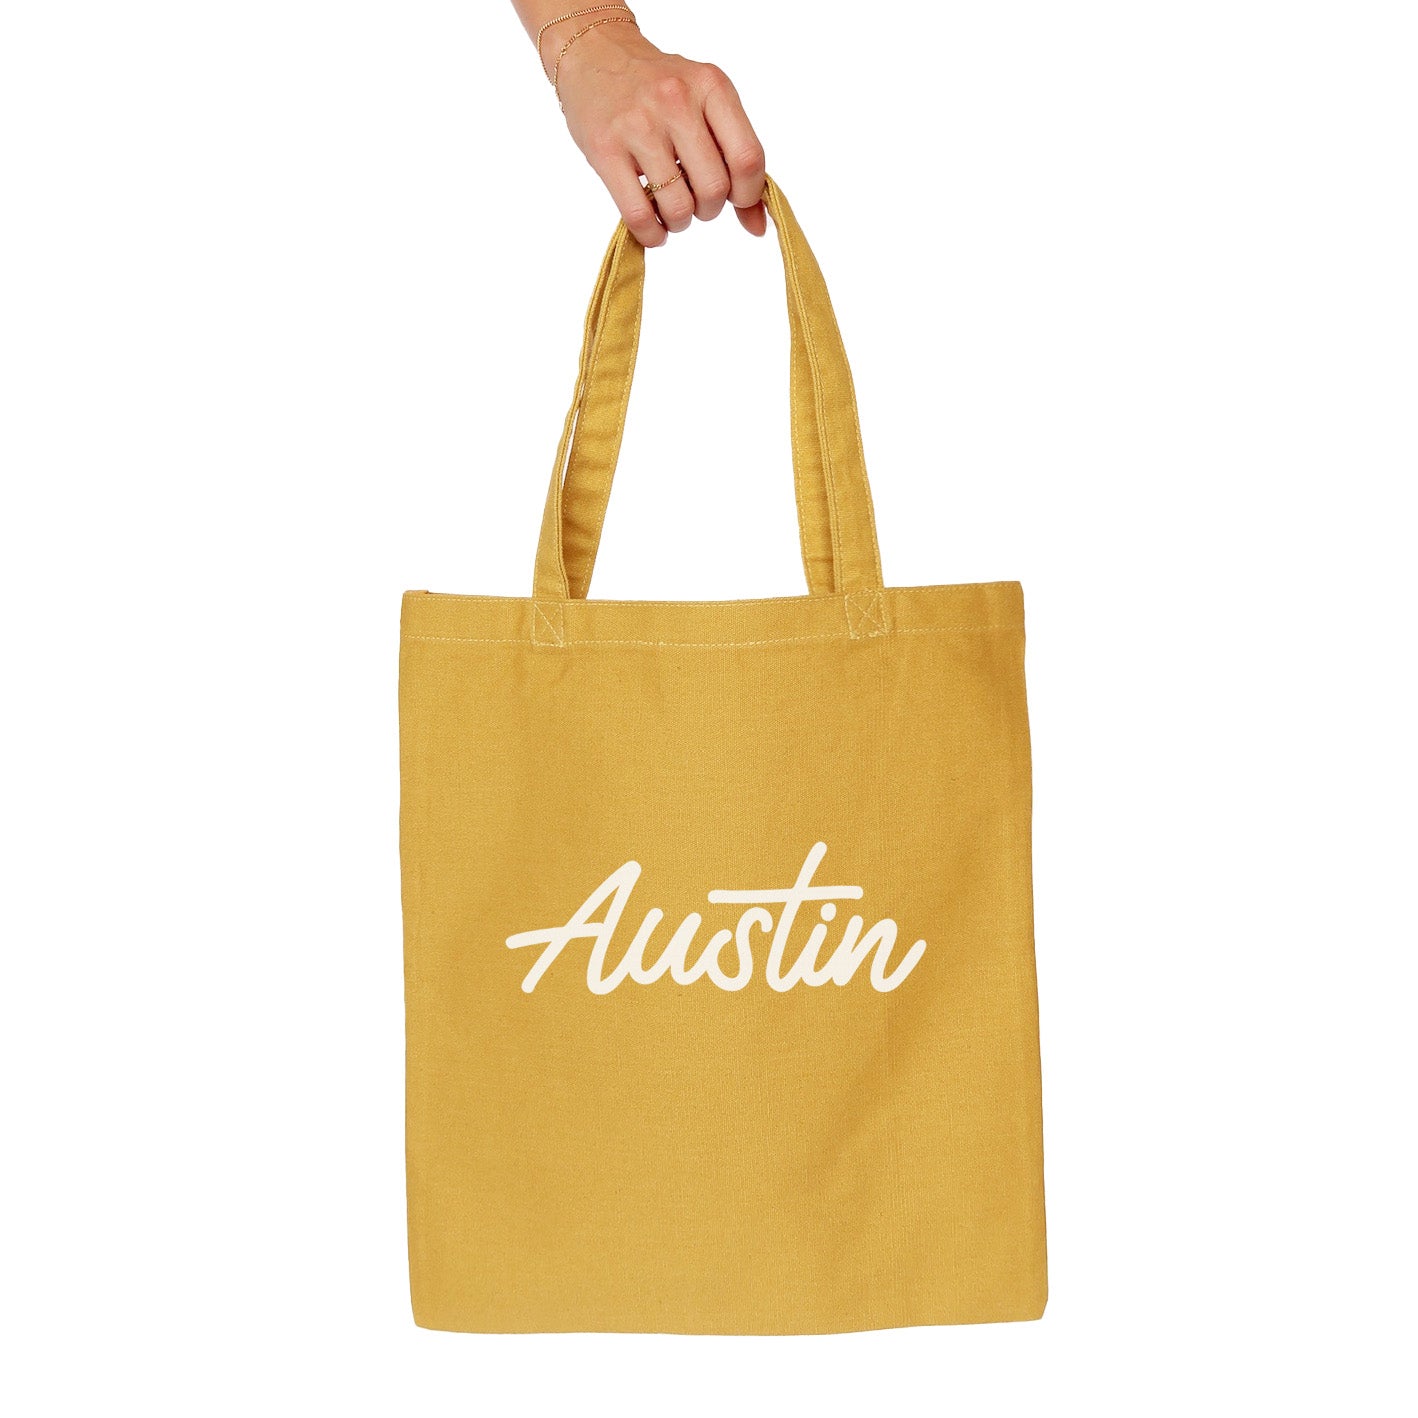 Austin Cursive Tote Bag